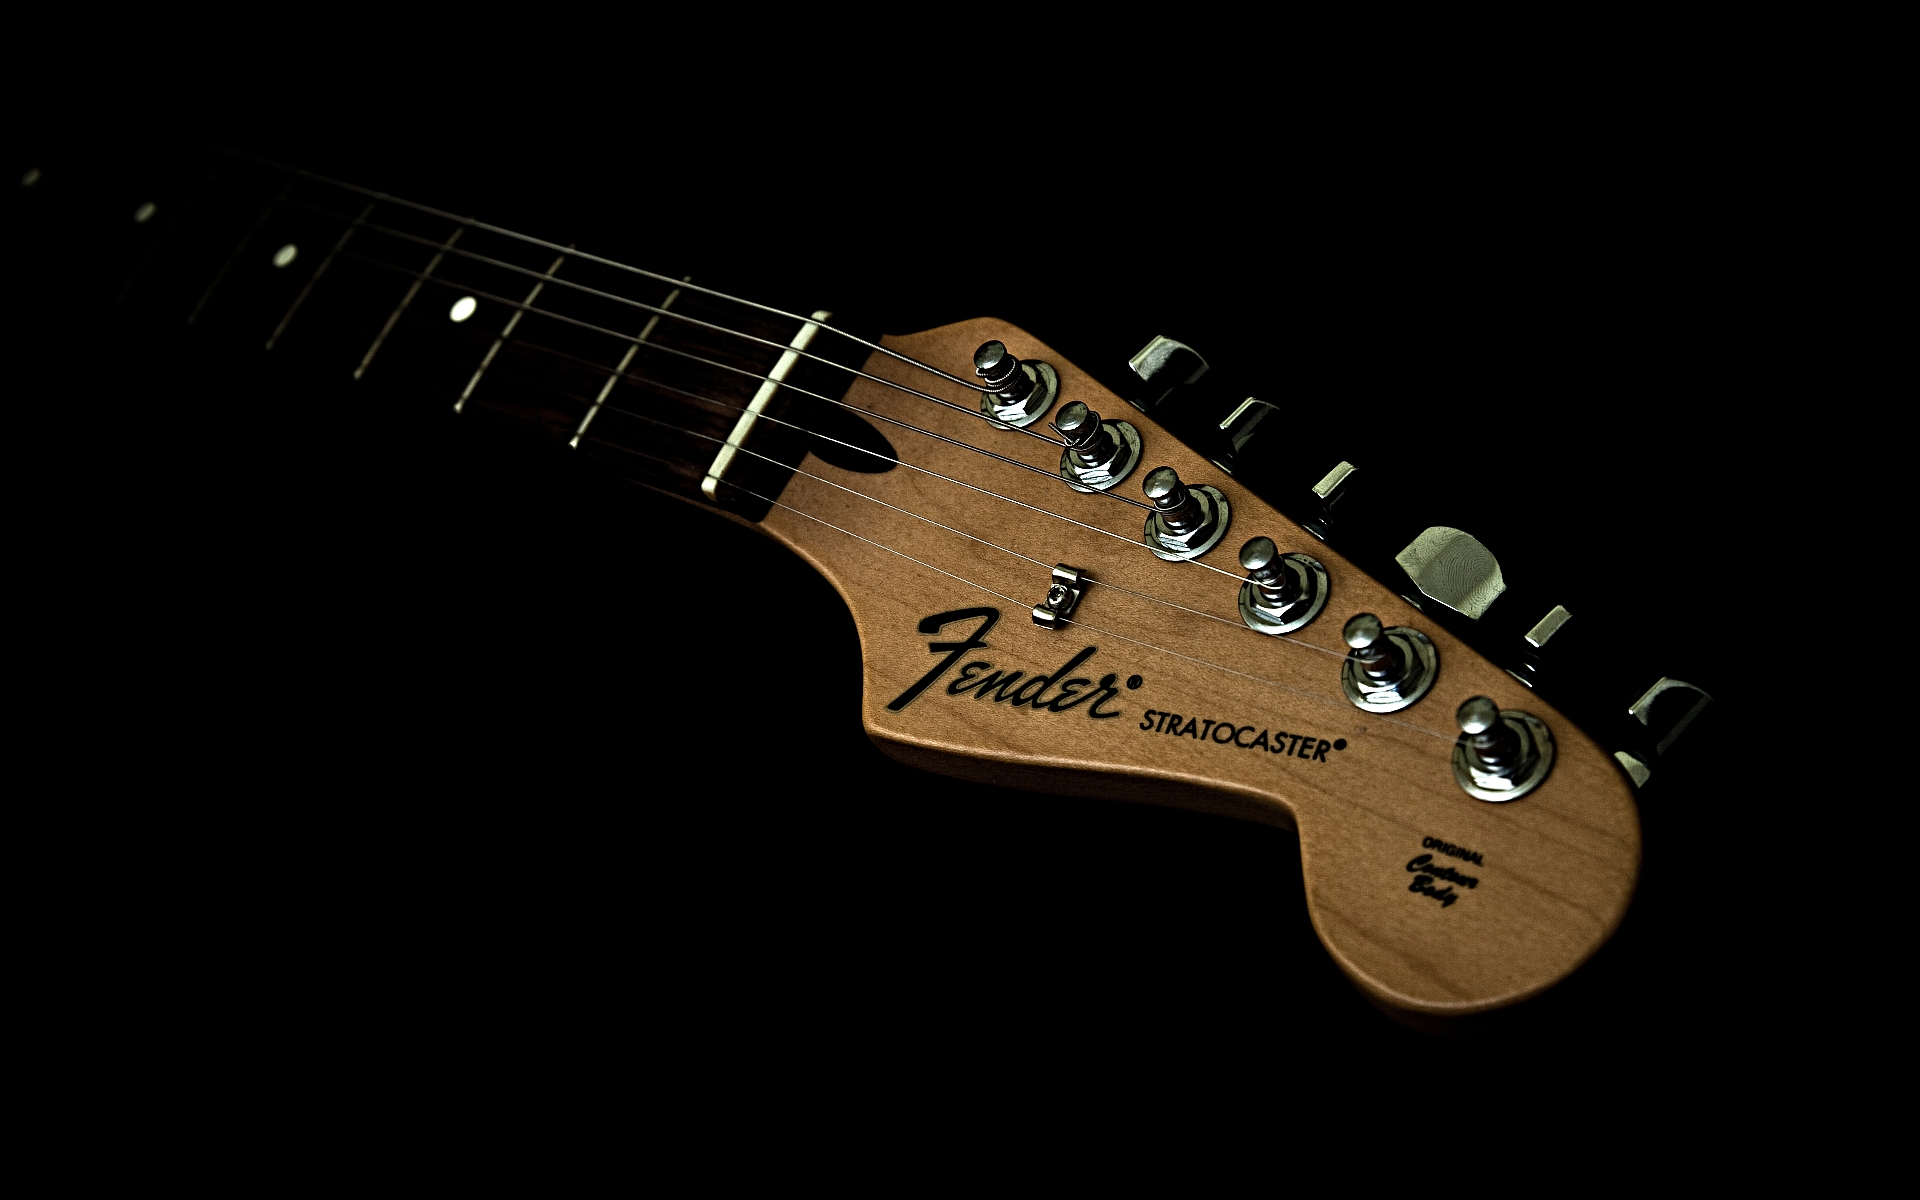 Fender Stratocaster Wallpaper HD On